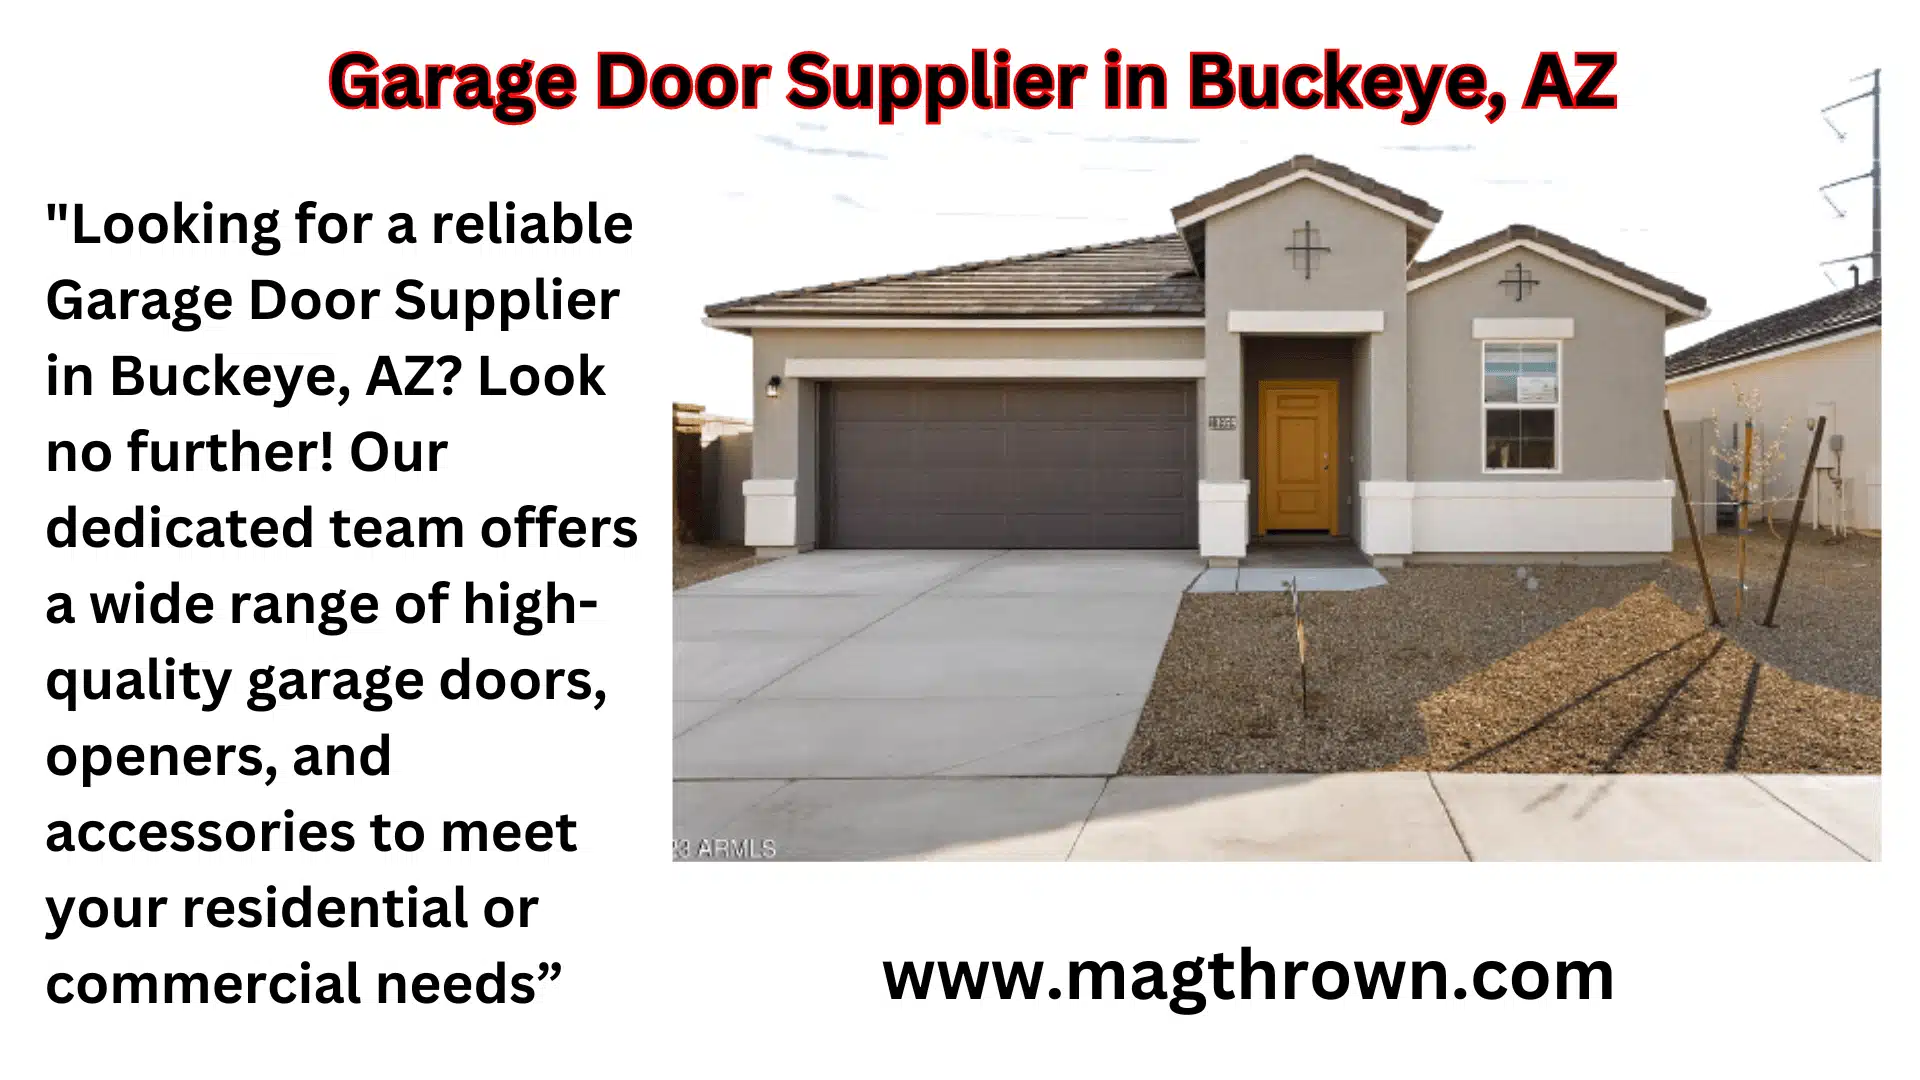 Garage Door Supplier in Buckeye, AZ